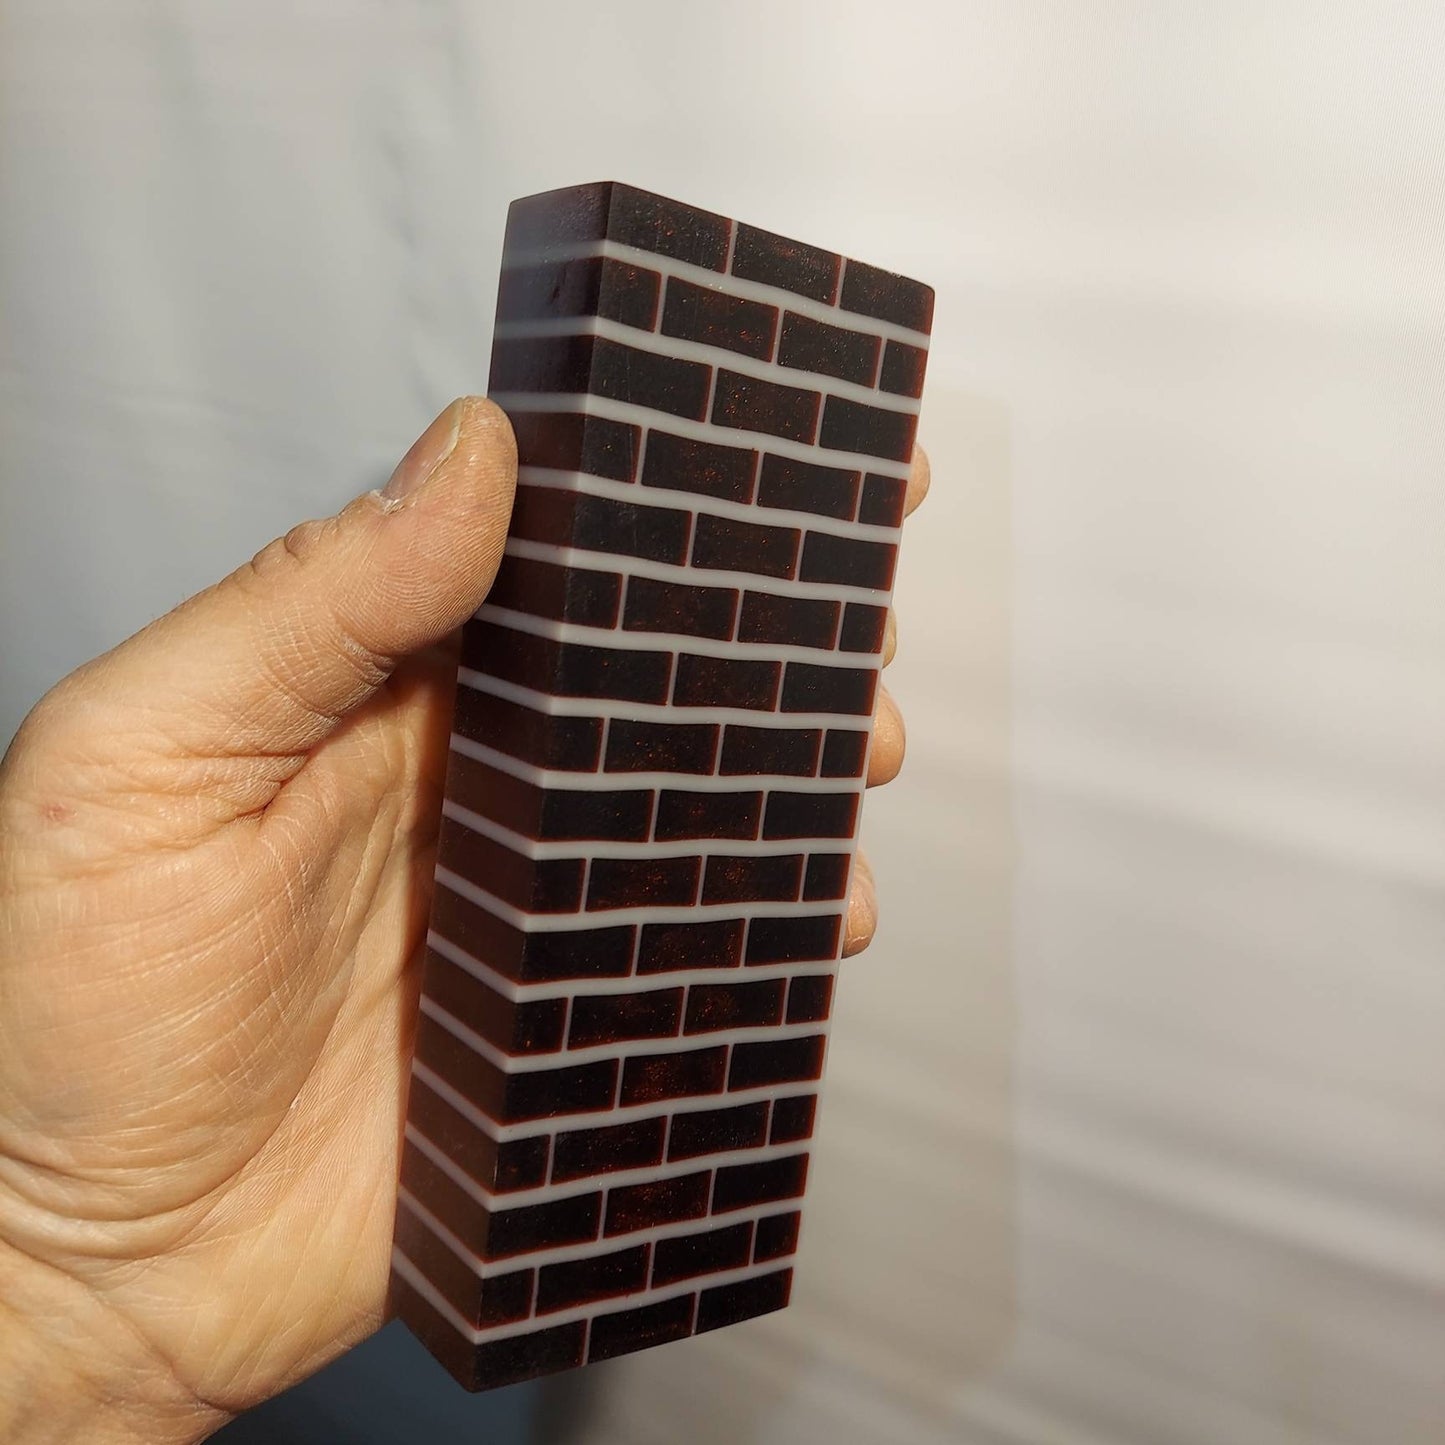 Alumilite brick wall knife block. 100% Alumilite resin block.